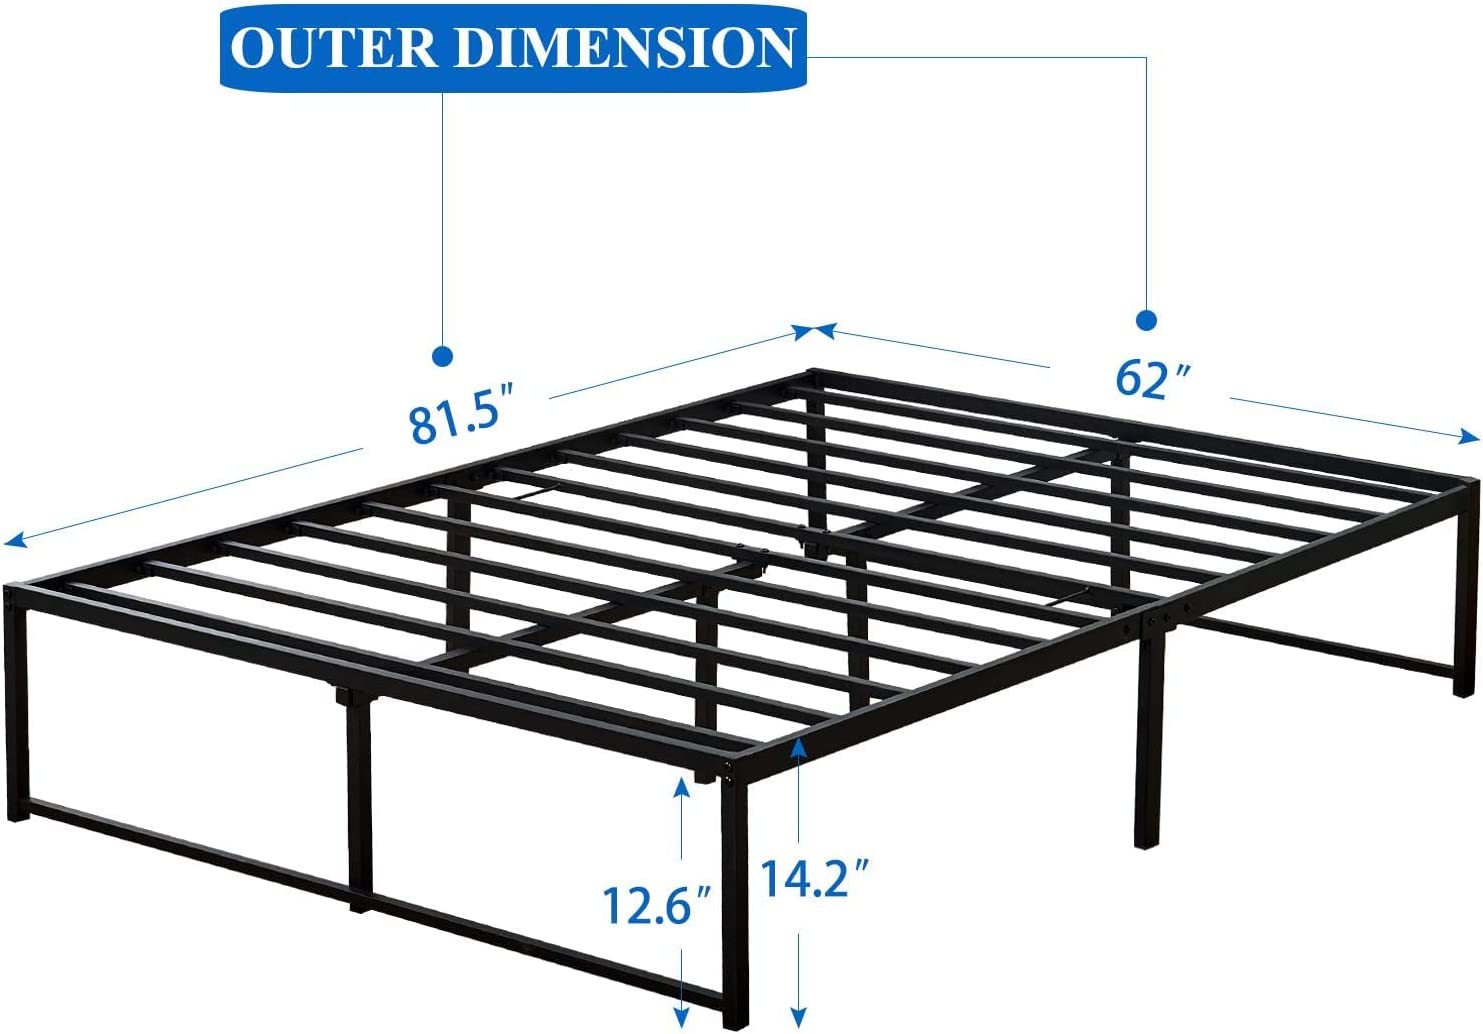 VECELO 14" Black Platform Bed Frame/Mattress Foundation/No Box Spring Needed/Steel Slat Support